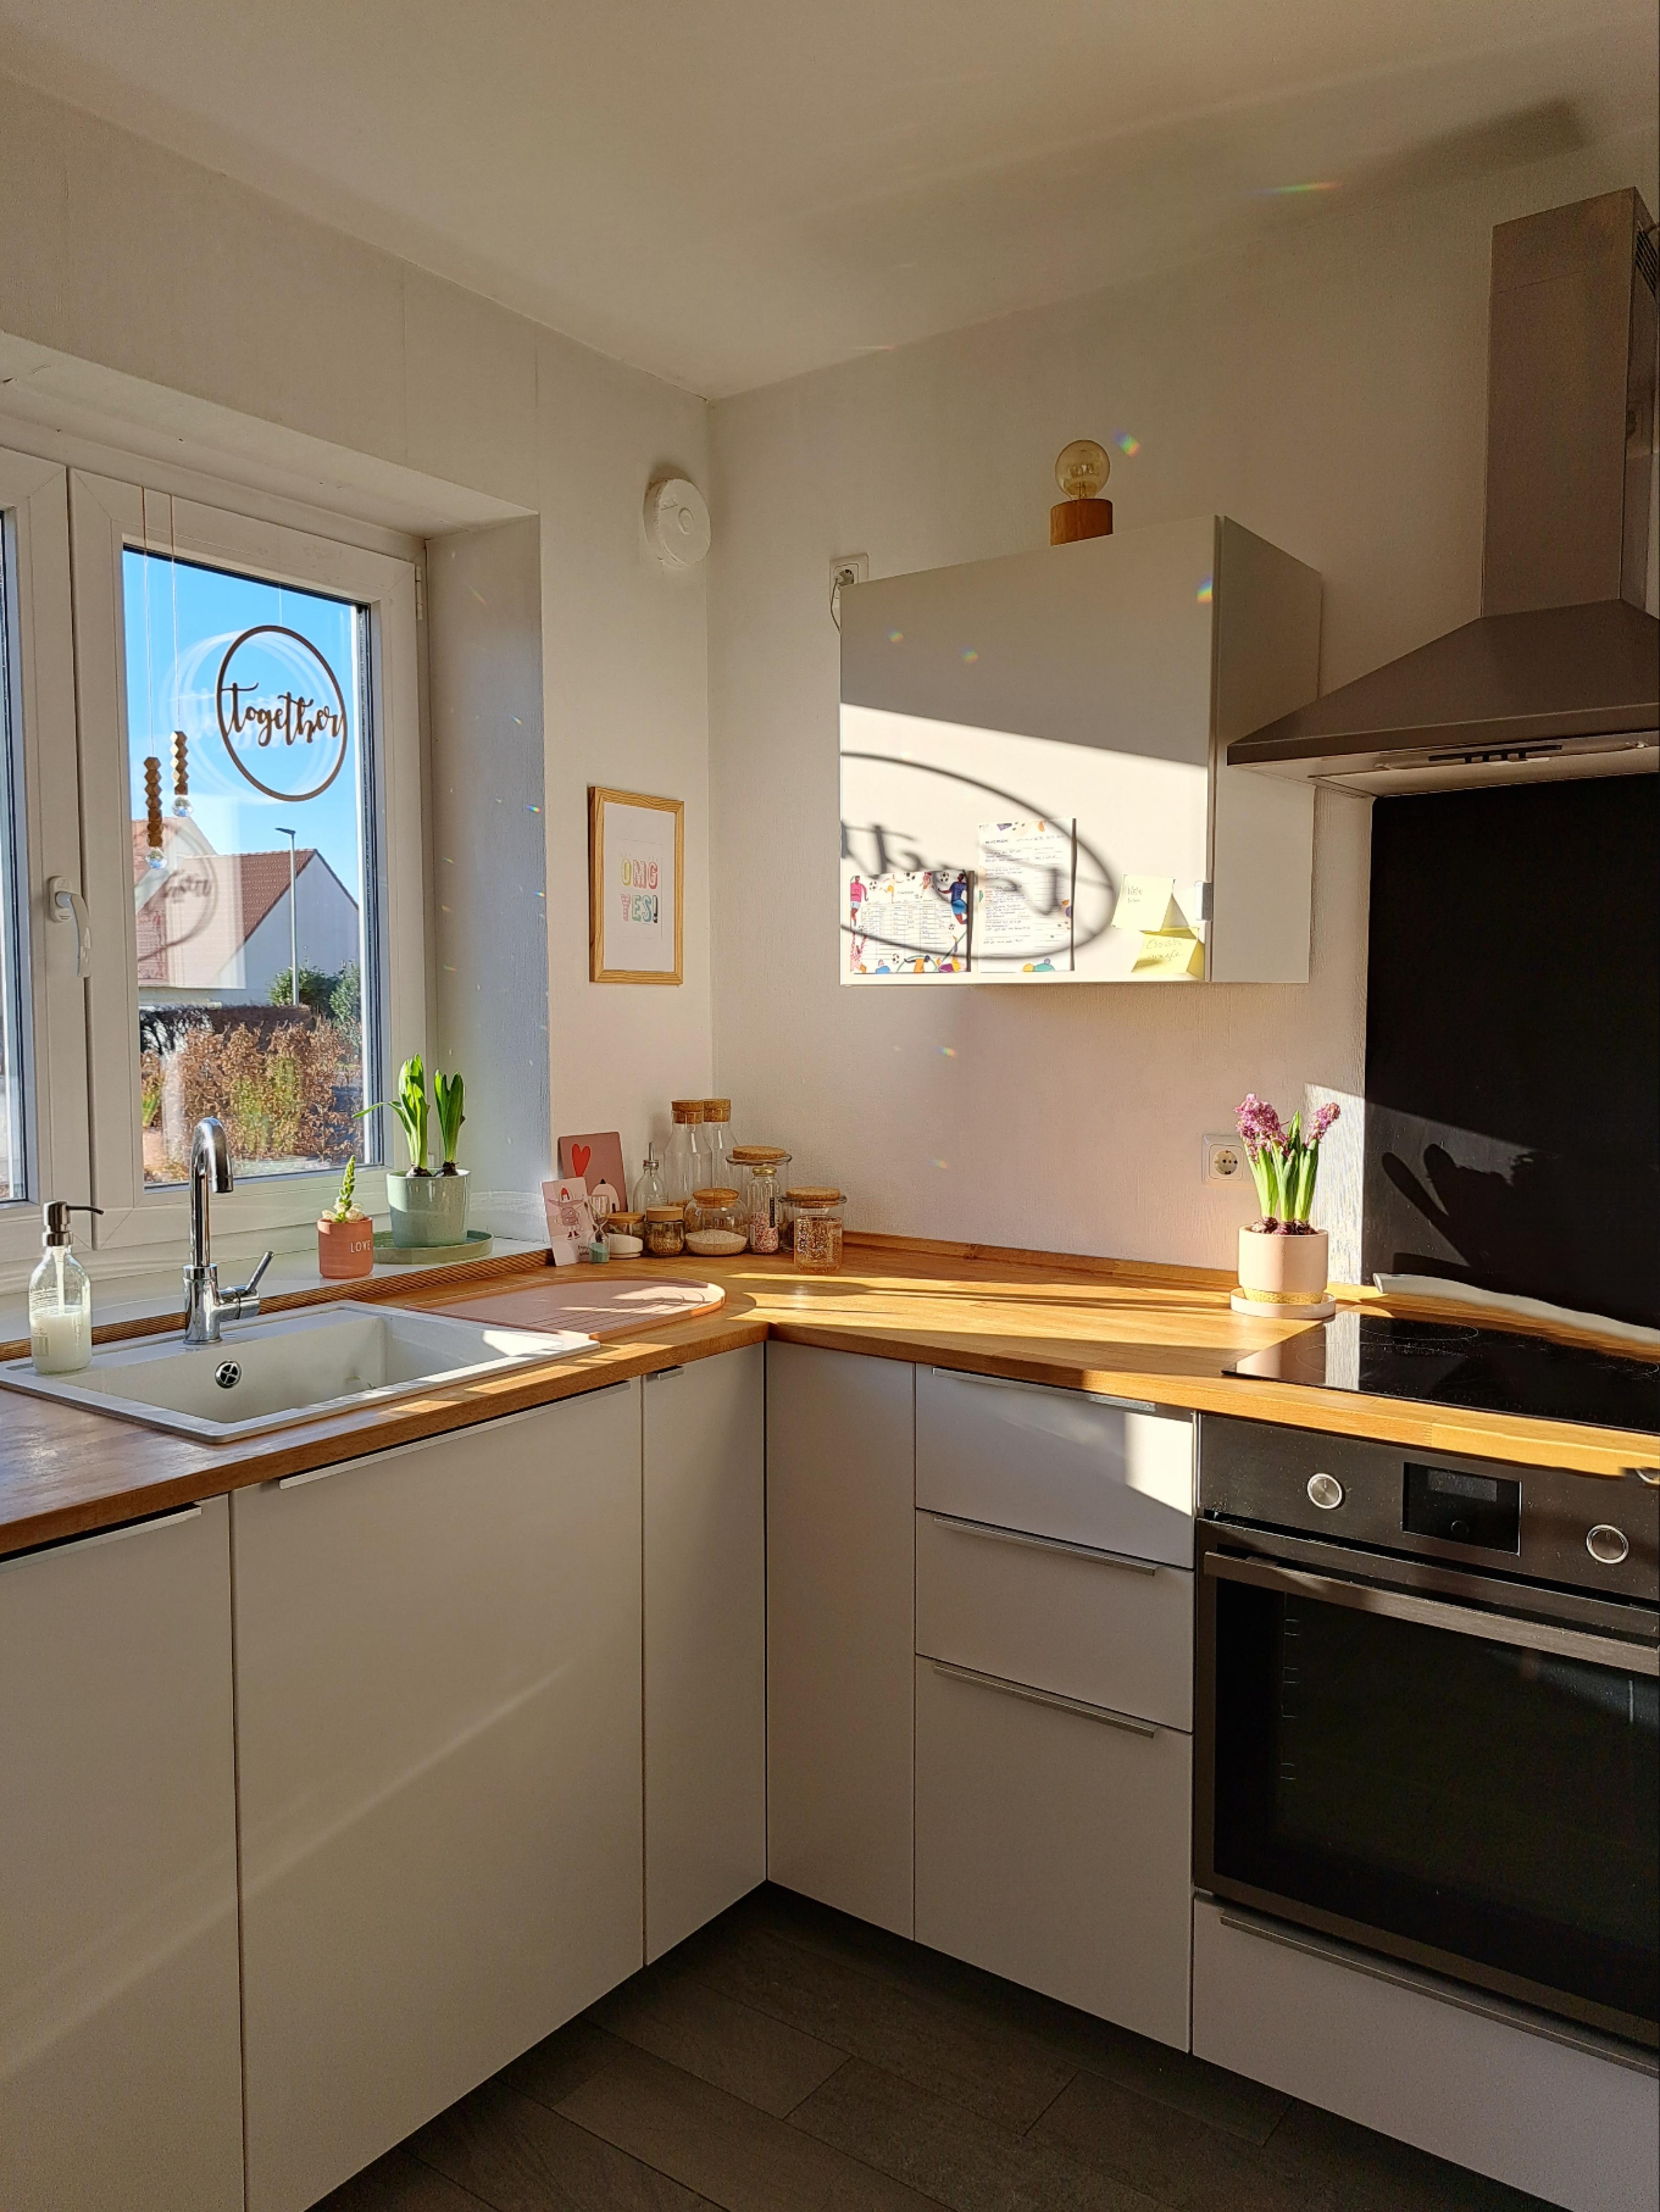 Sunny kitchen
#sonne #küche